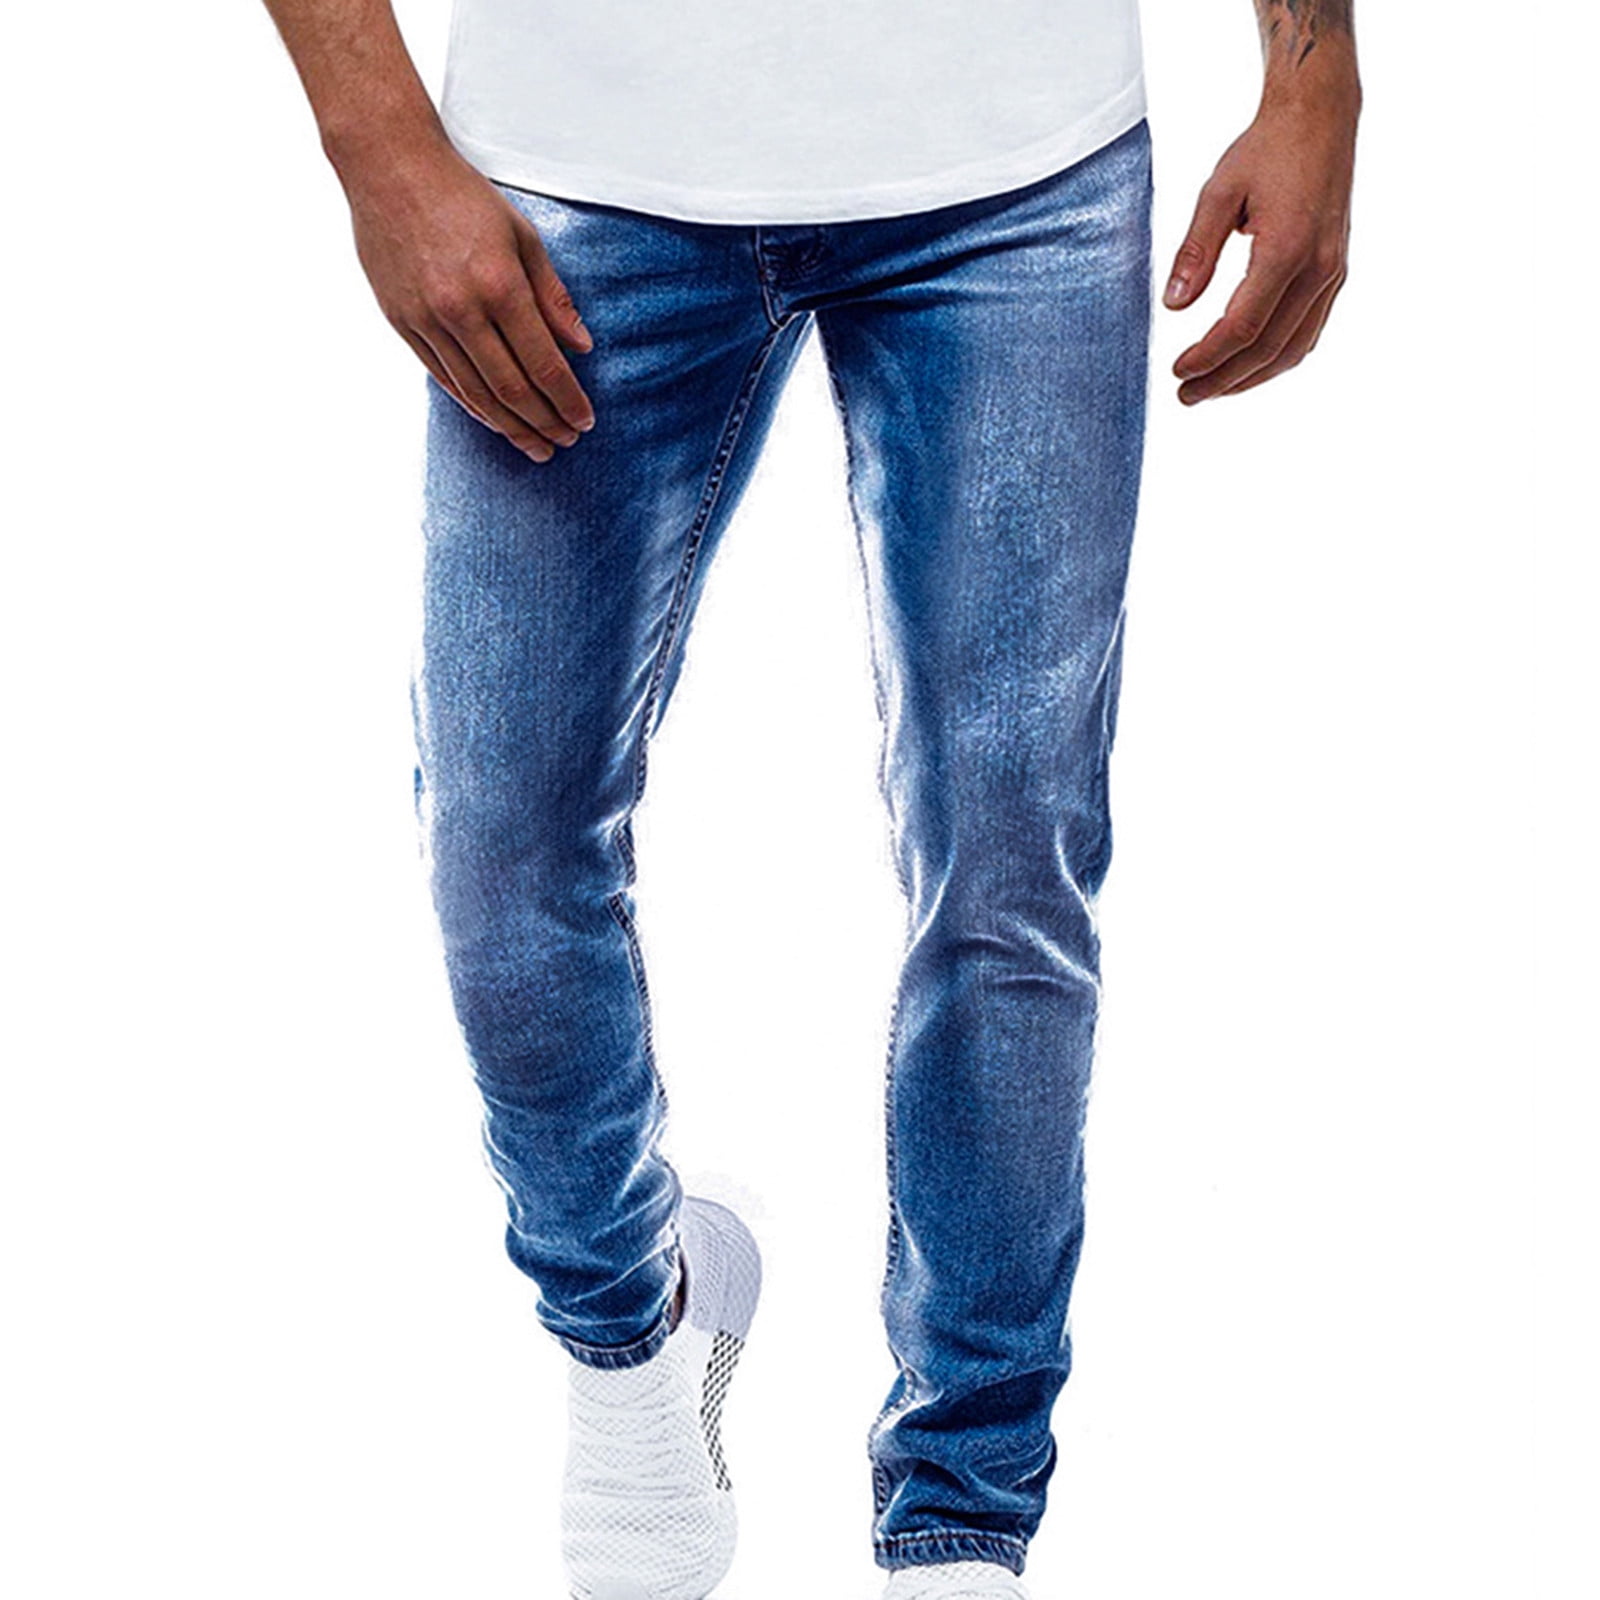 DDAPJ pyju Jeans for Men Casual Business Skinny Jeans Solid Color Slim ...